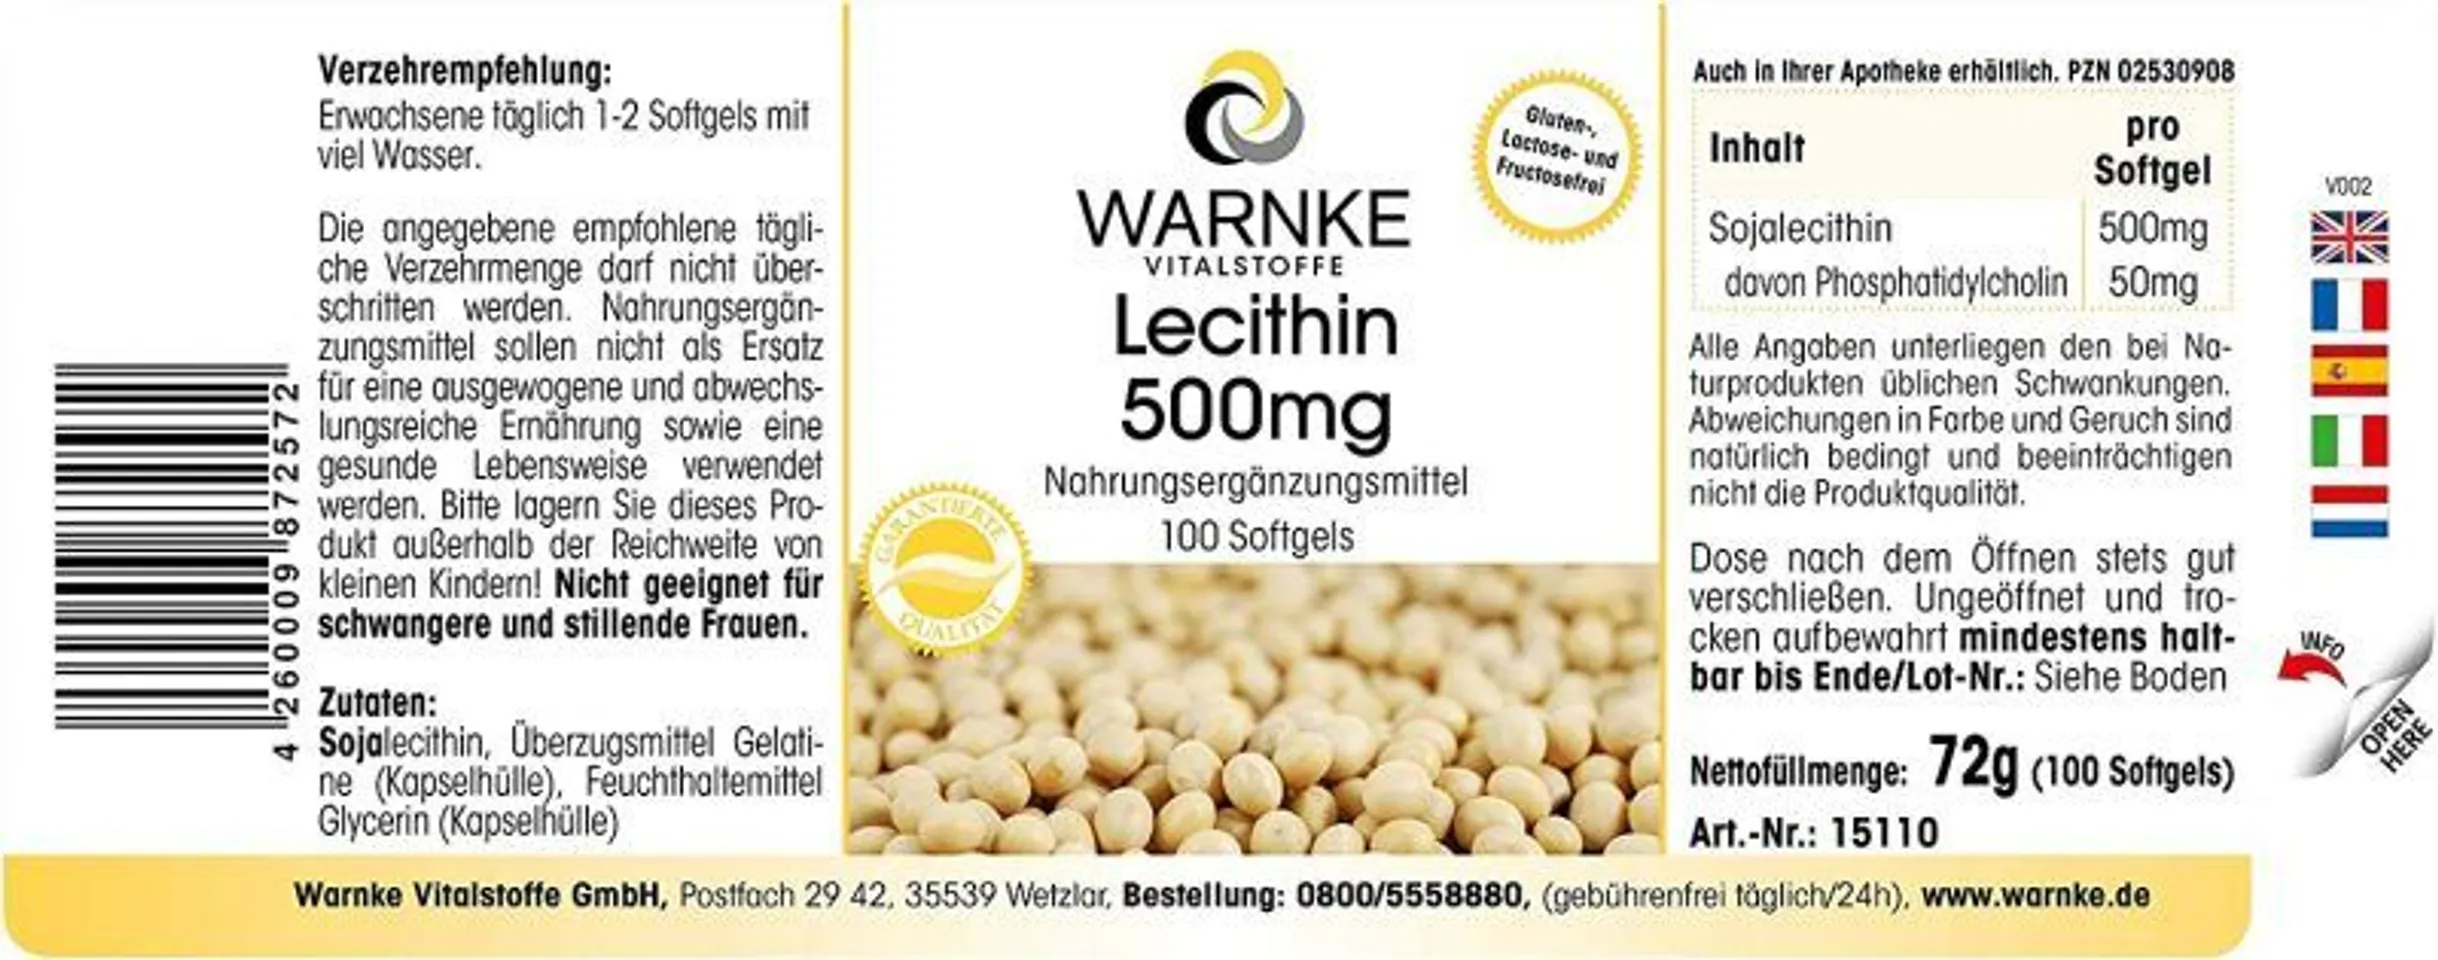 Hướng dẫn sử dụng mầm đậu nành Warnke Vitalstoffe Lecithin